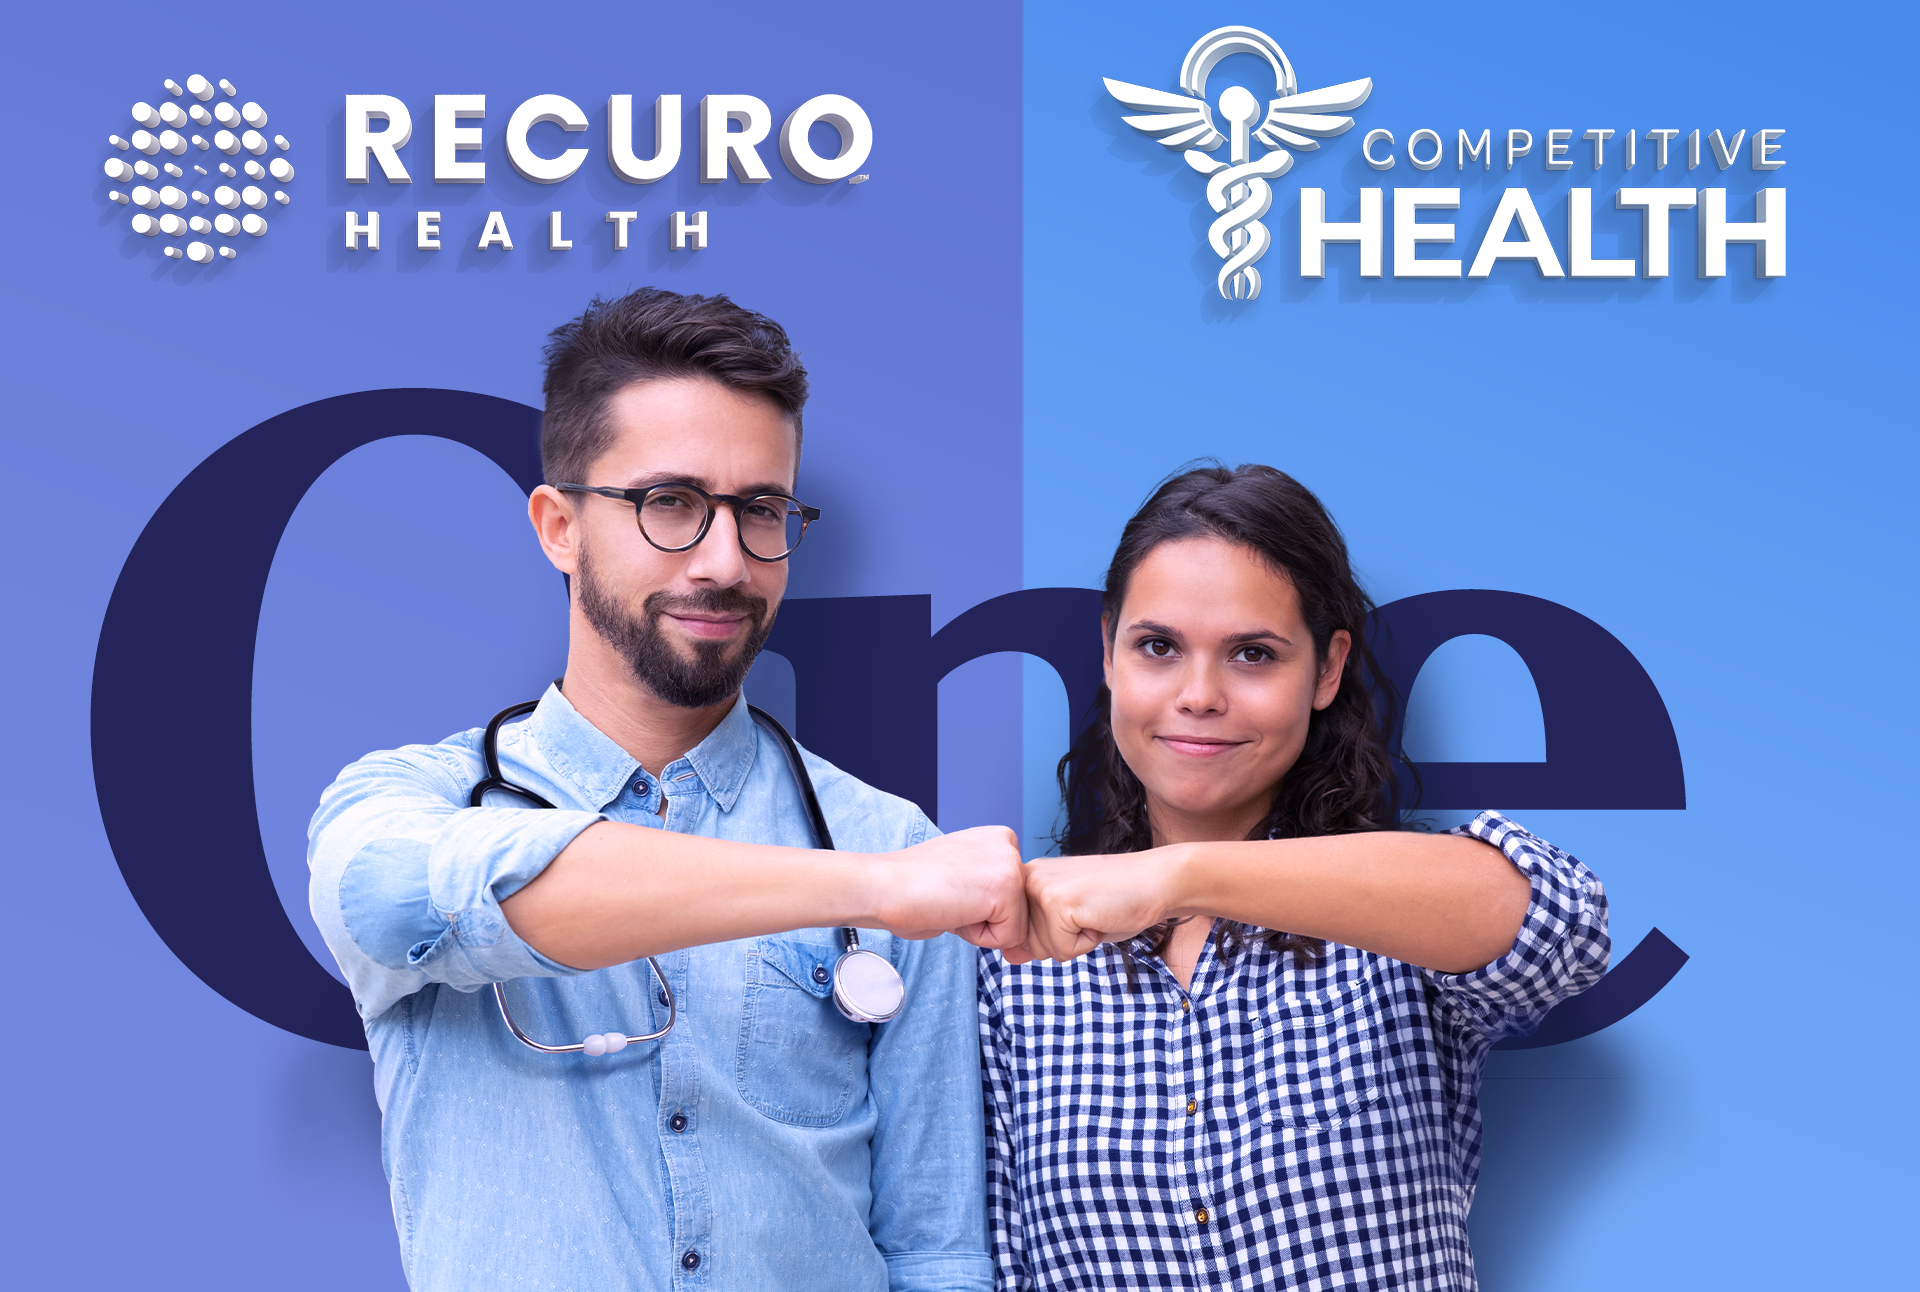 Recuro Health adquiere Competitive Health, líder en prestaciones integradas